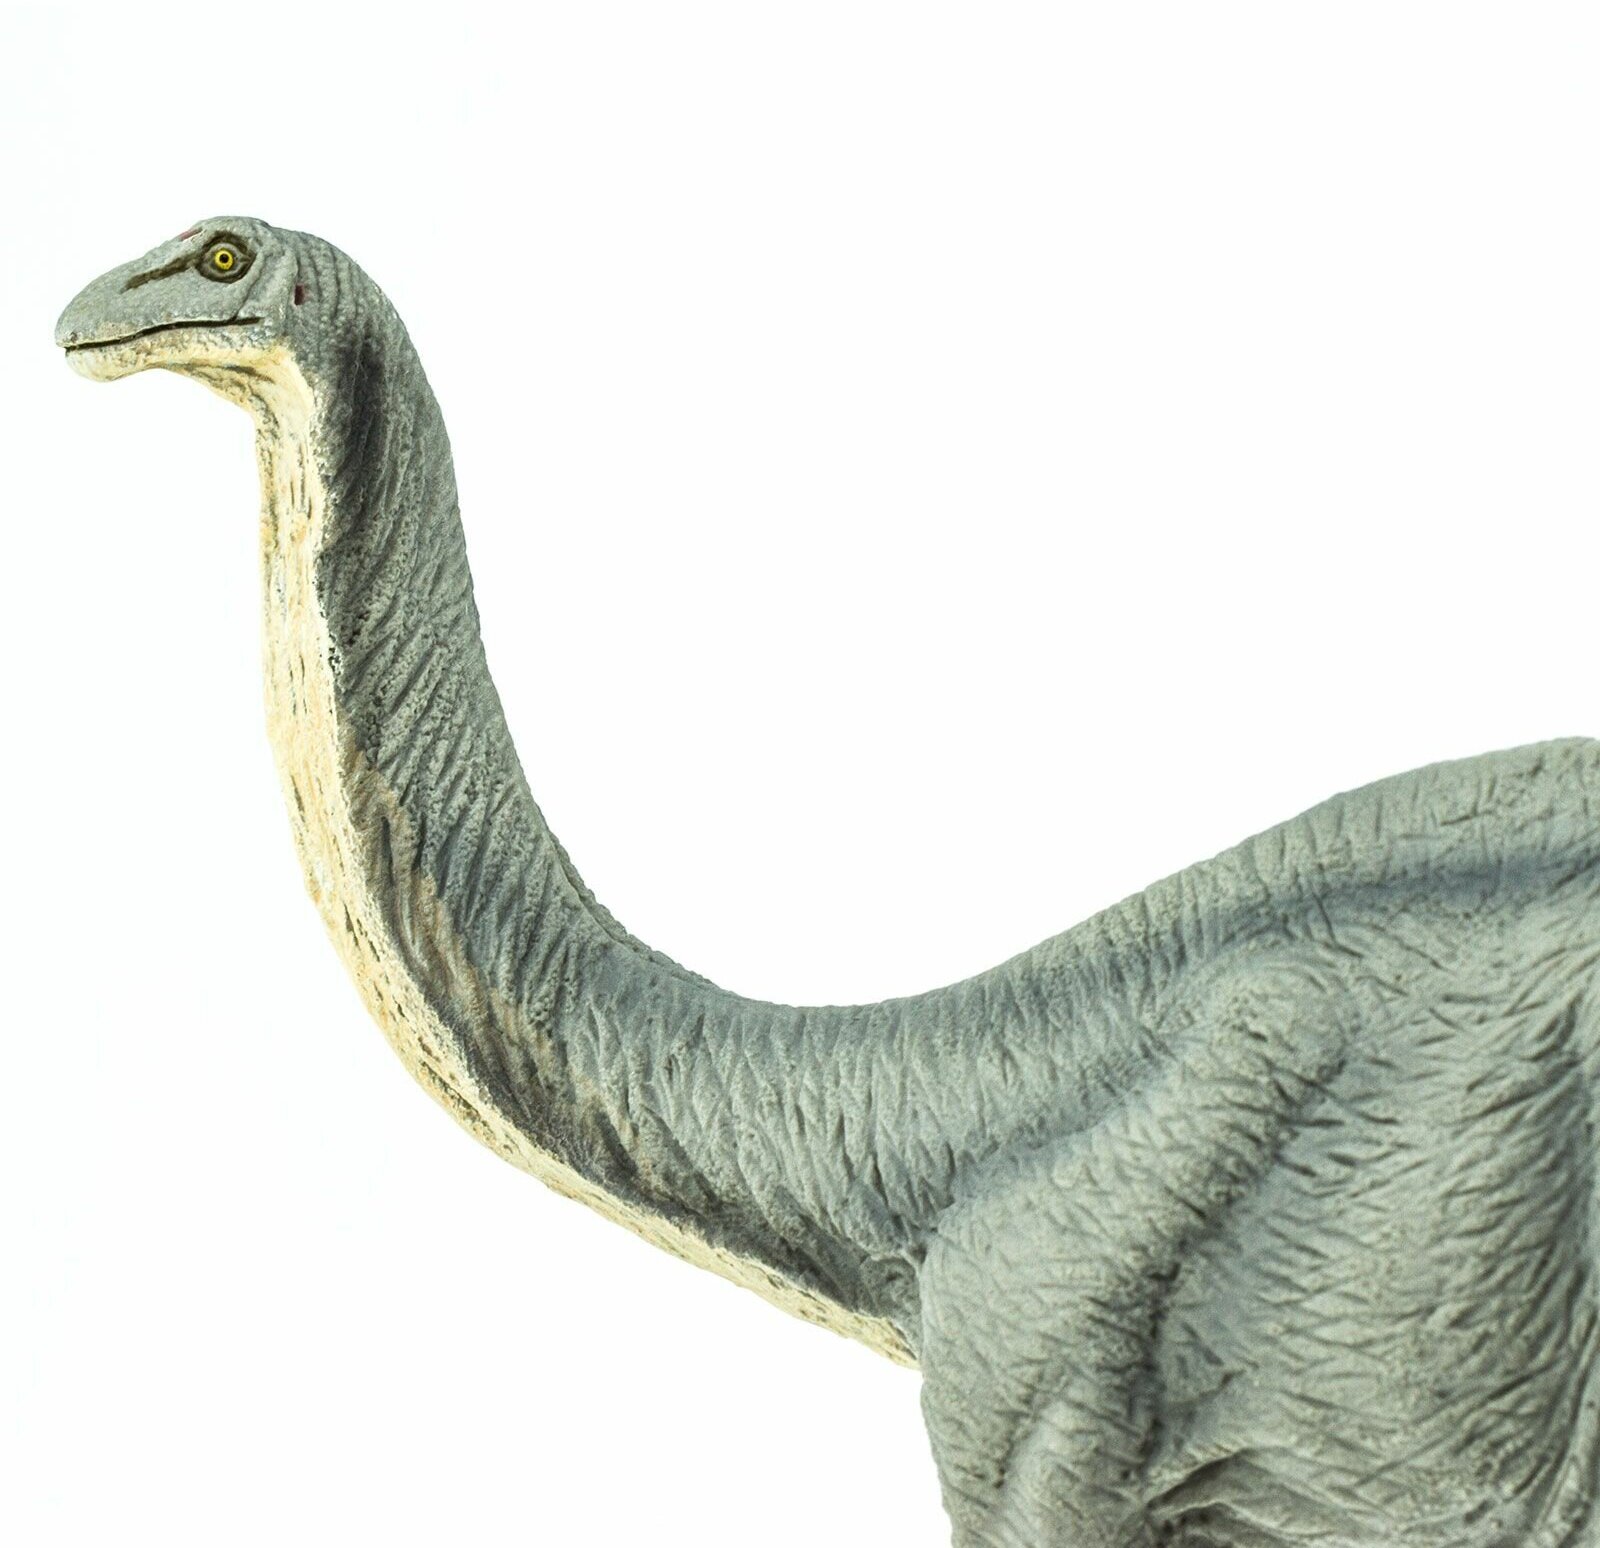 Фигурка животного динозавра Safari Ltd Апатозавр, для детей, игрушка коллекционная, 300429